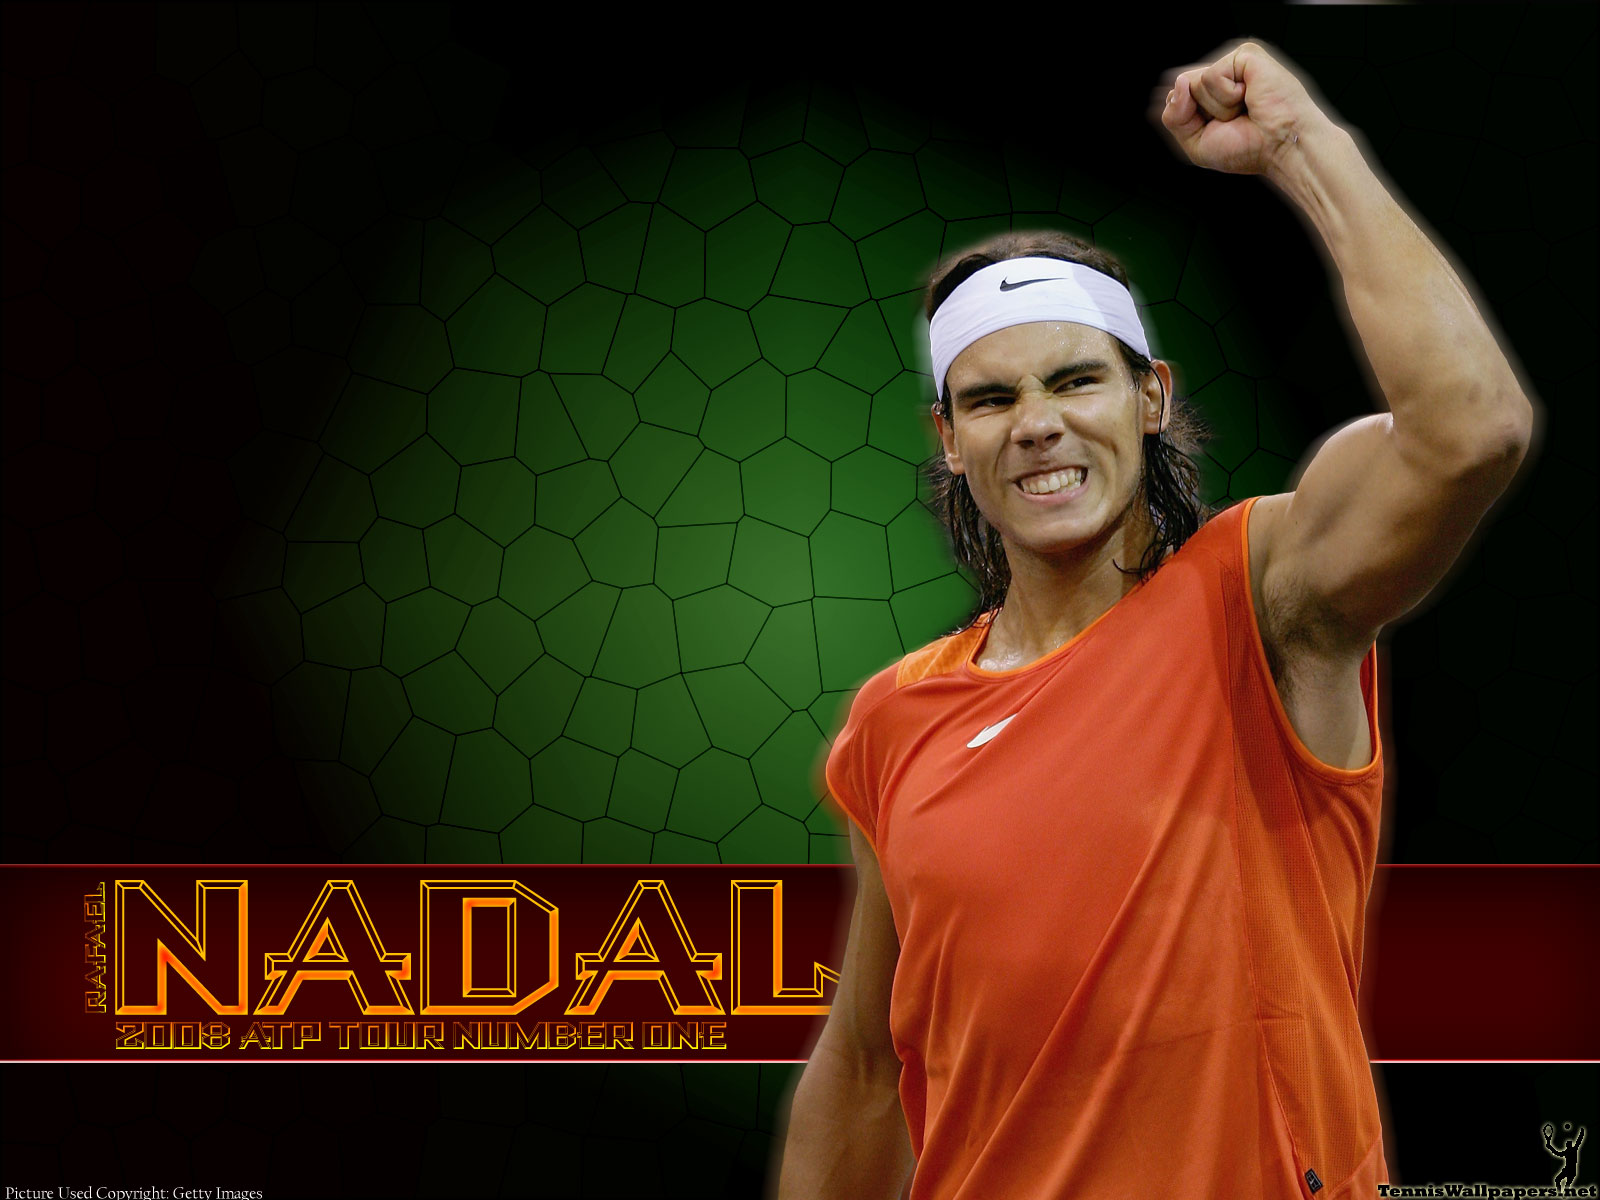 Rafael Nadal Wallpaper